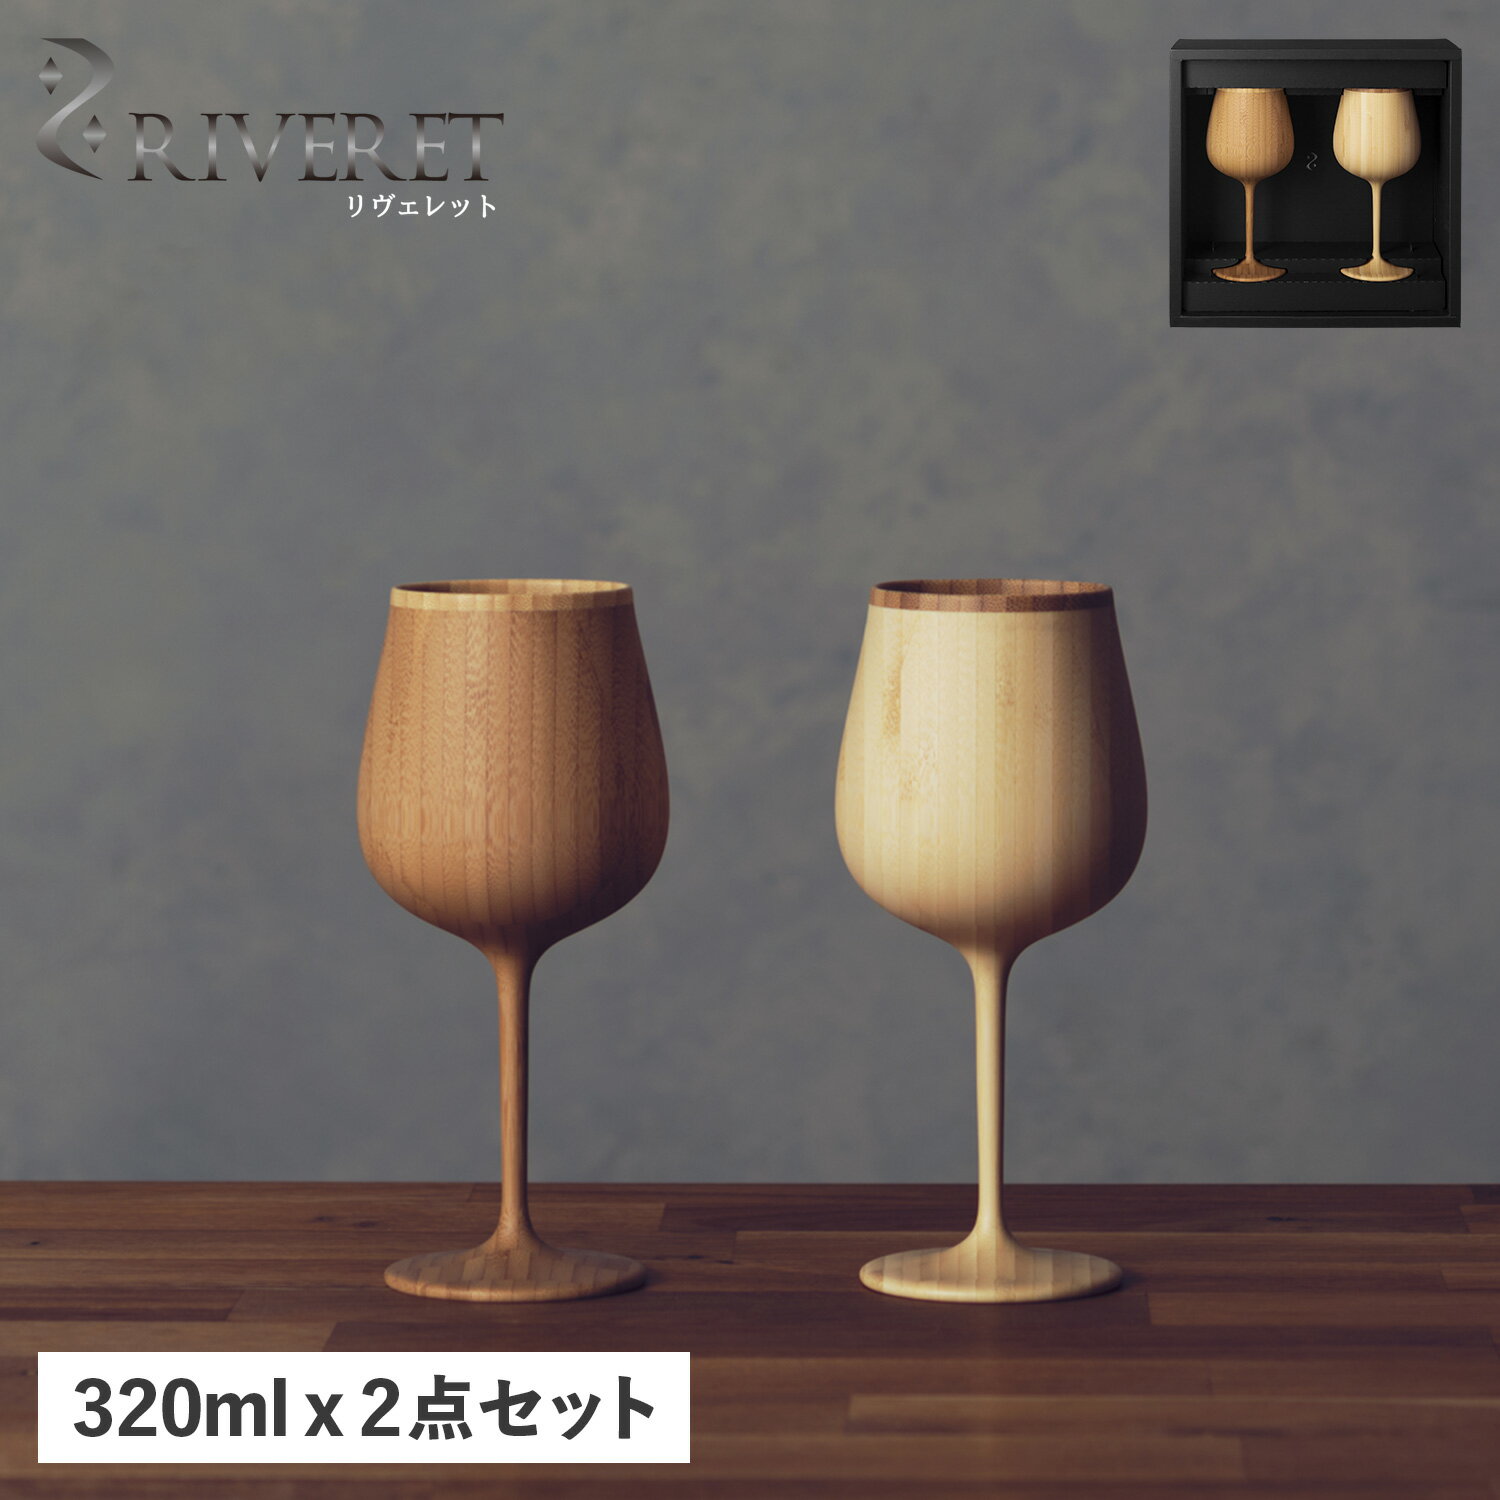 リヴェレット RIVERET グラス ワイングラス 2点セット ペアグラス ブルゴーニュ 割れない 天然素材 日本製 軽量 食洗器対応 リベレット BOURGOGNE PAIR RV-118WB 母の日